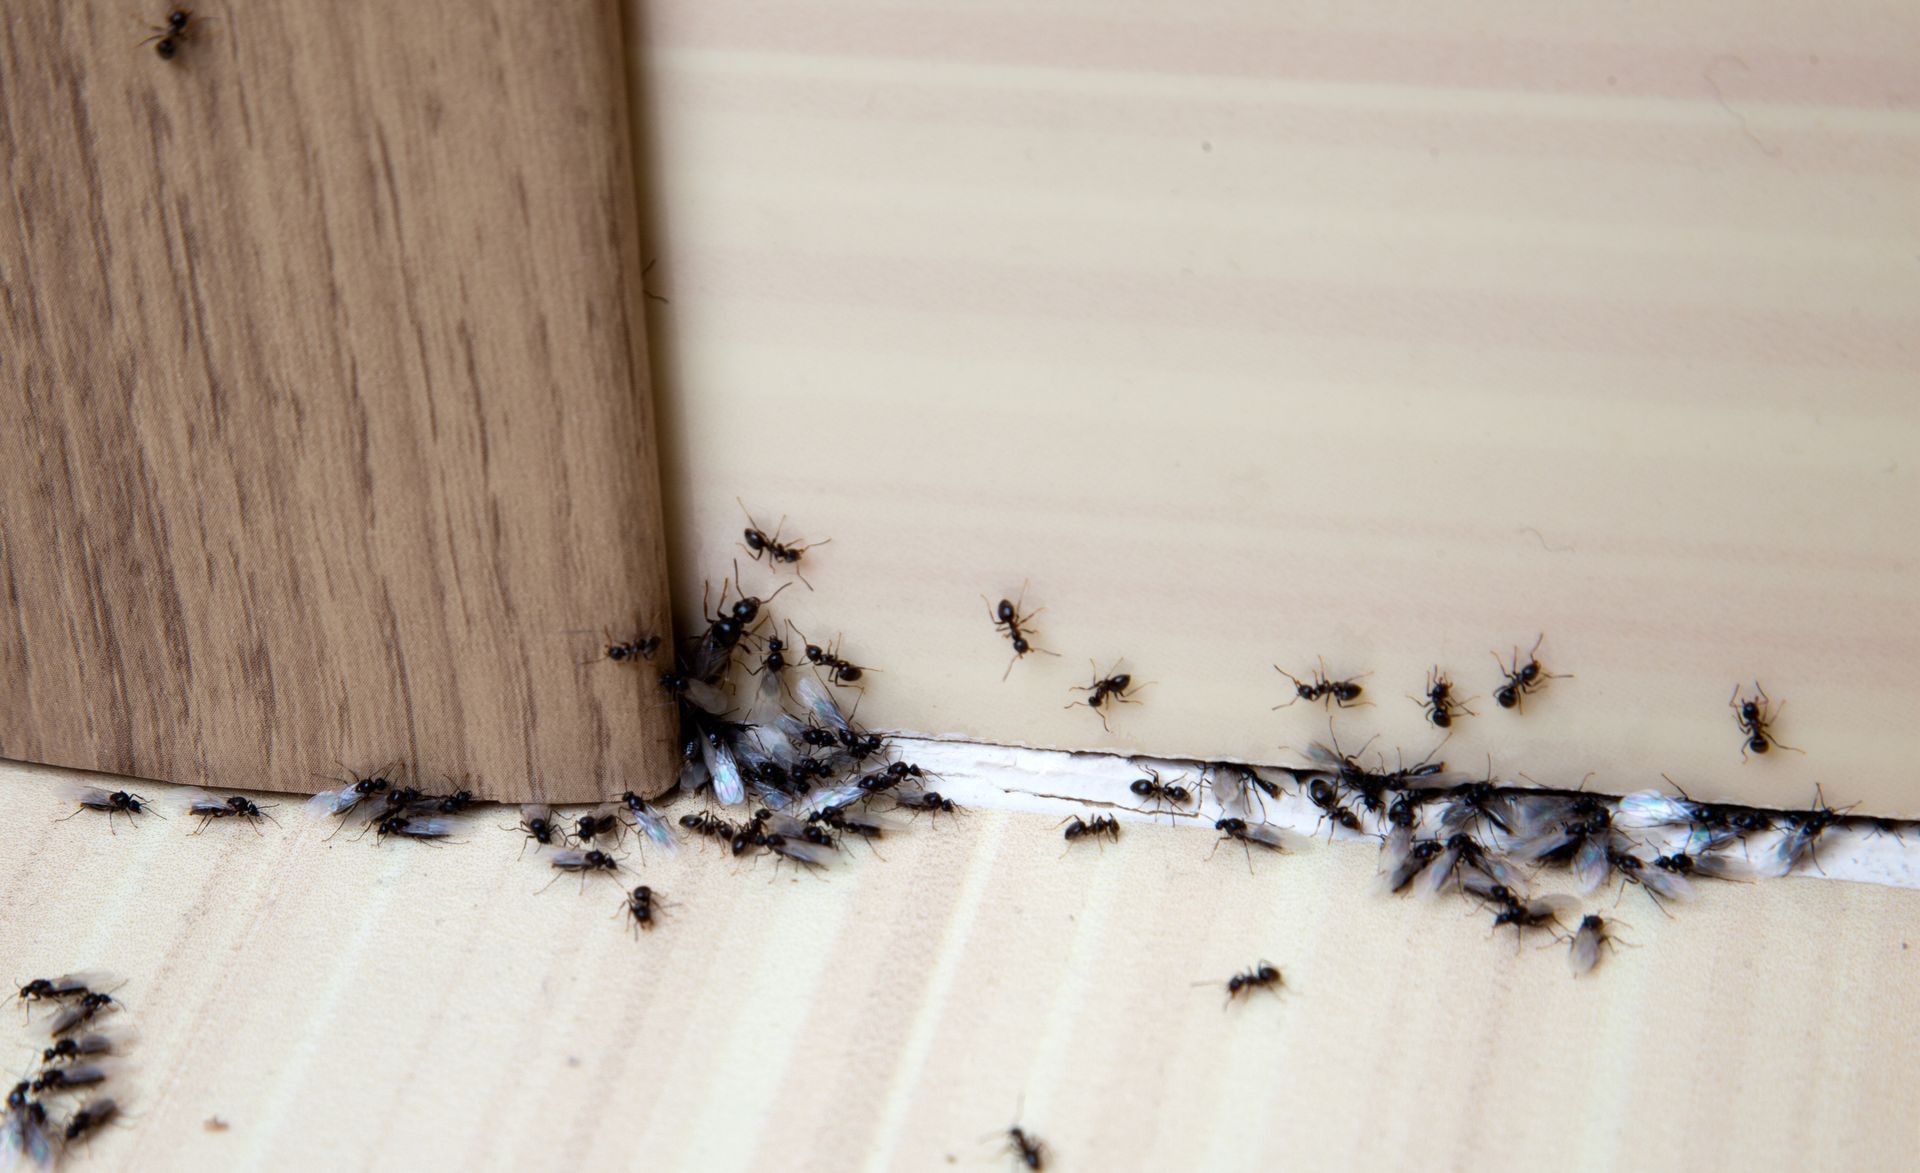 Ants Pest